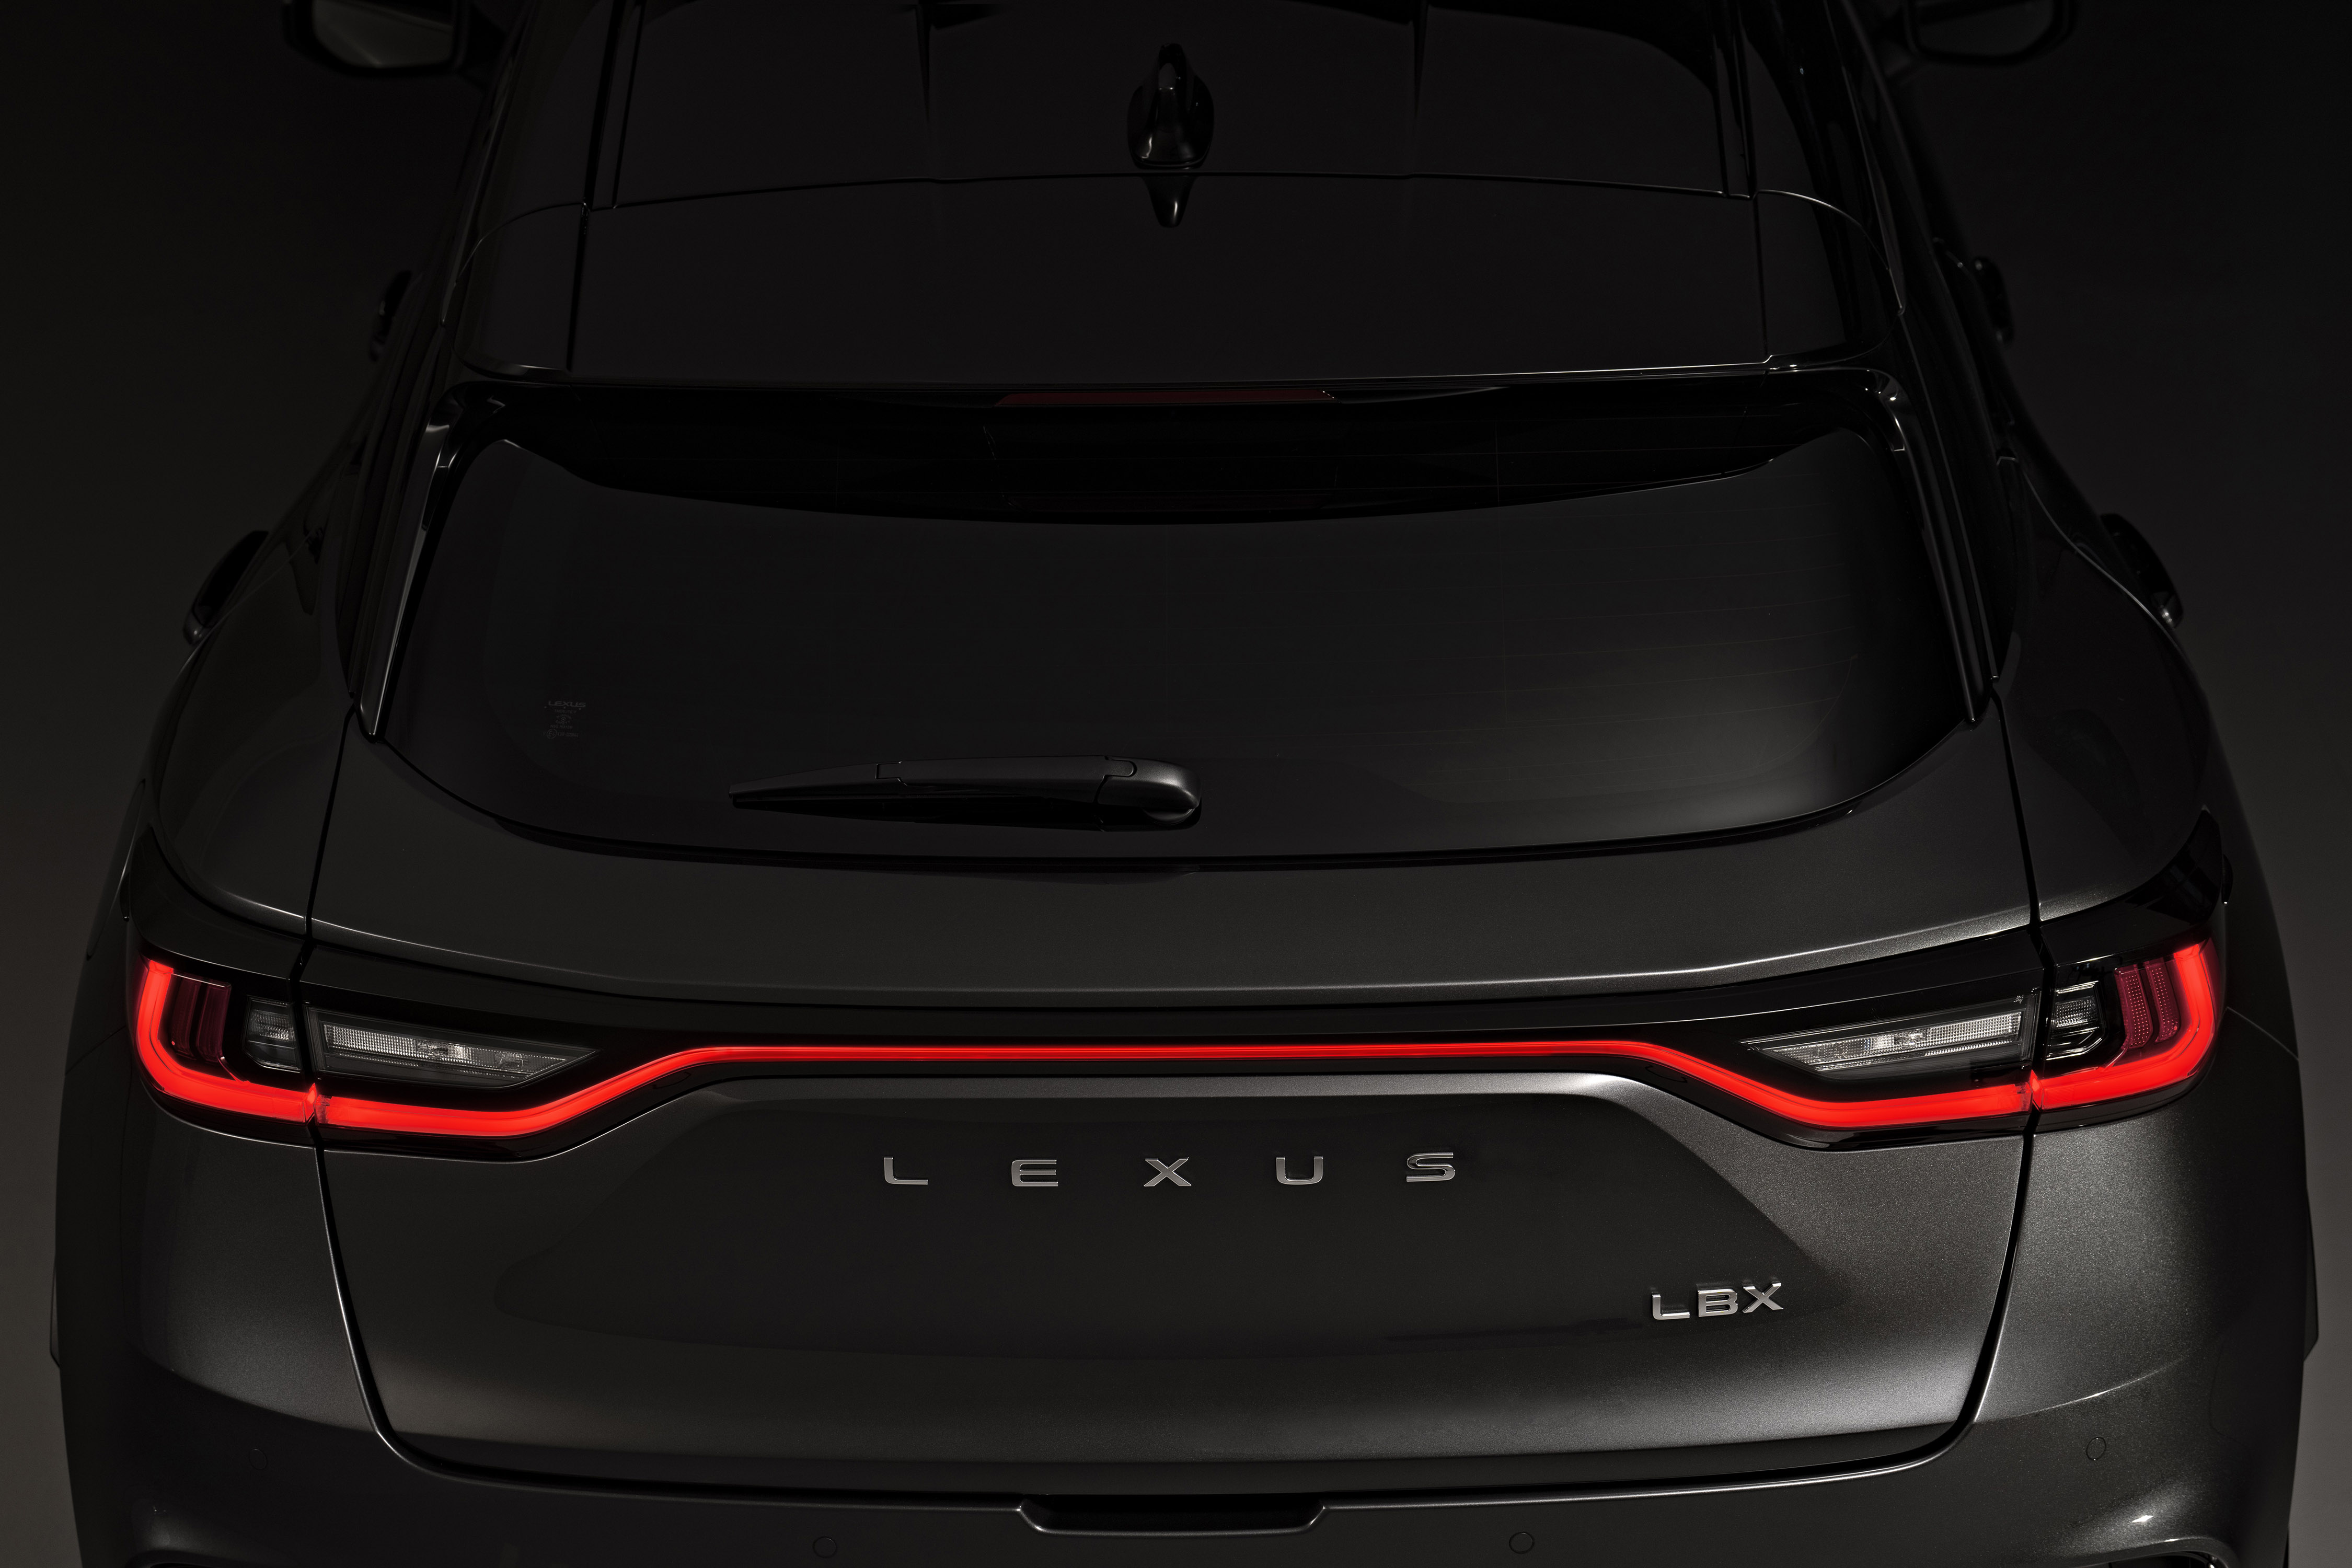 17_Wereldpremiere-volledig-nieuwe-Lexus-LBX-de-essentie-van-Lexus-gedestilleerd